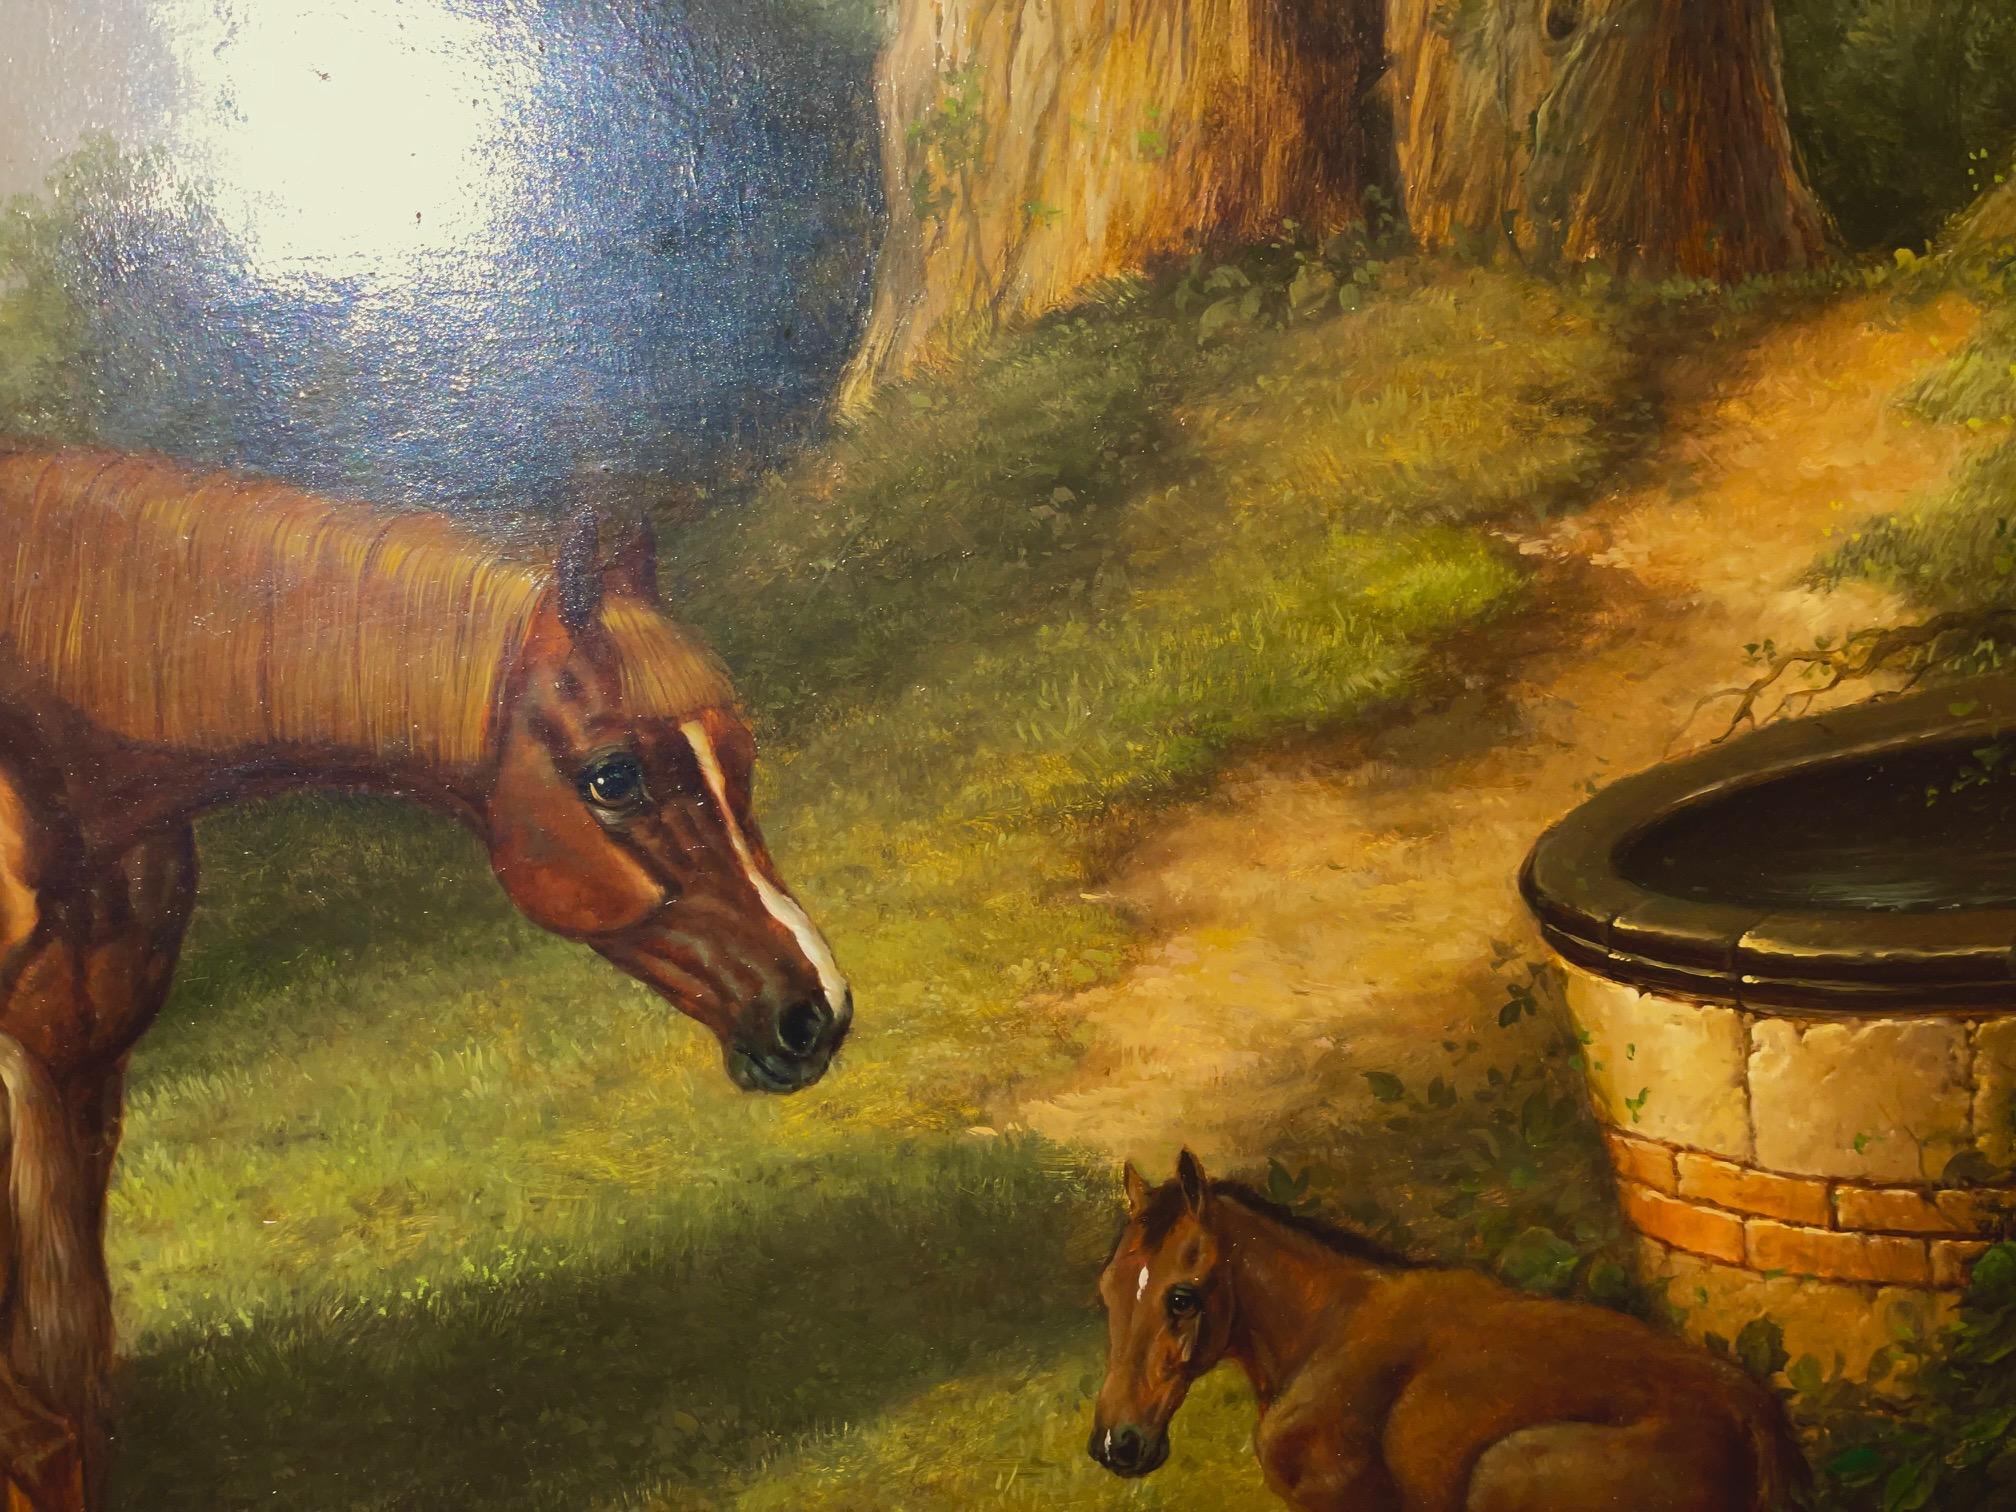 Peinture à l'huile du 19e siècle représentant une jument et deux poulains dans un paysage par l'artiste écossais Robert Alexander (1840-1923), signée et datée.  Alexander est connu pour ses peintures d'animaux, principalement des chevaux et des